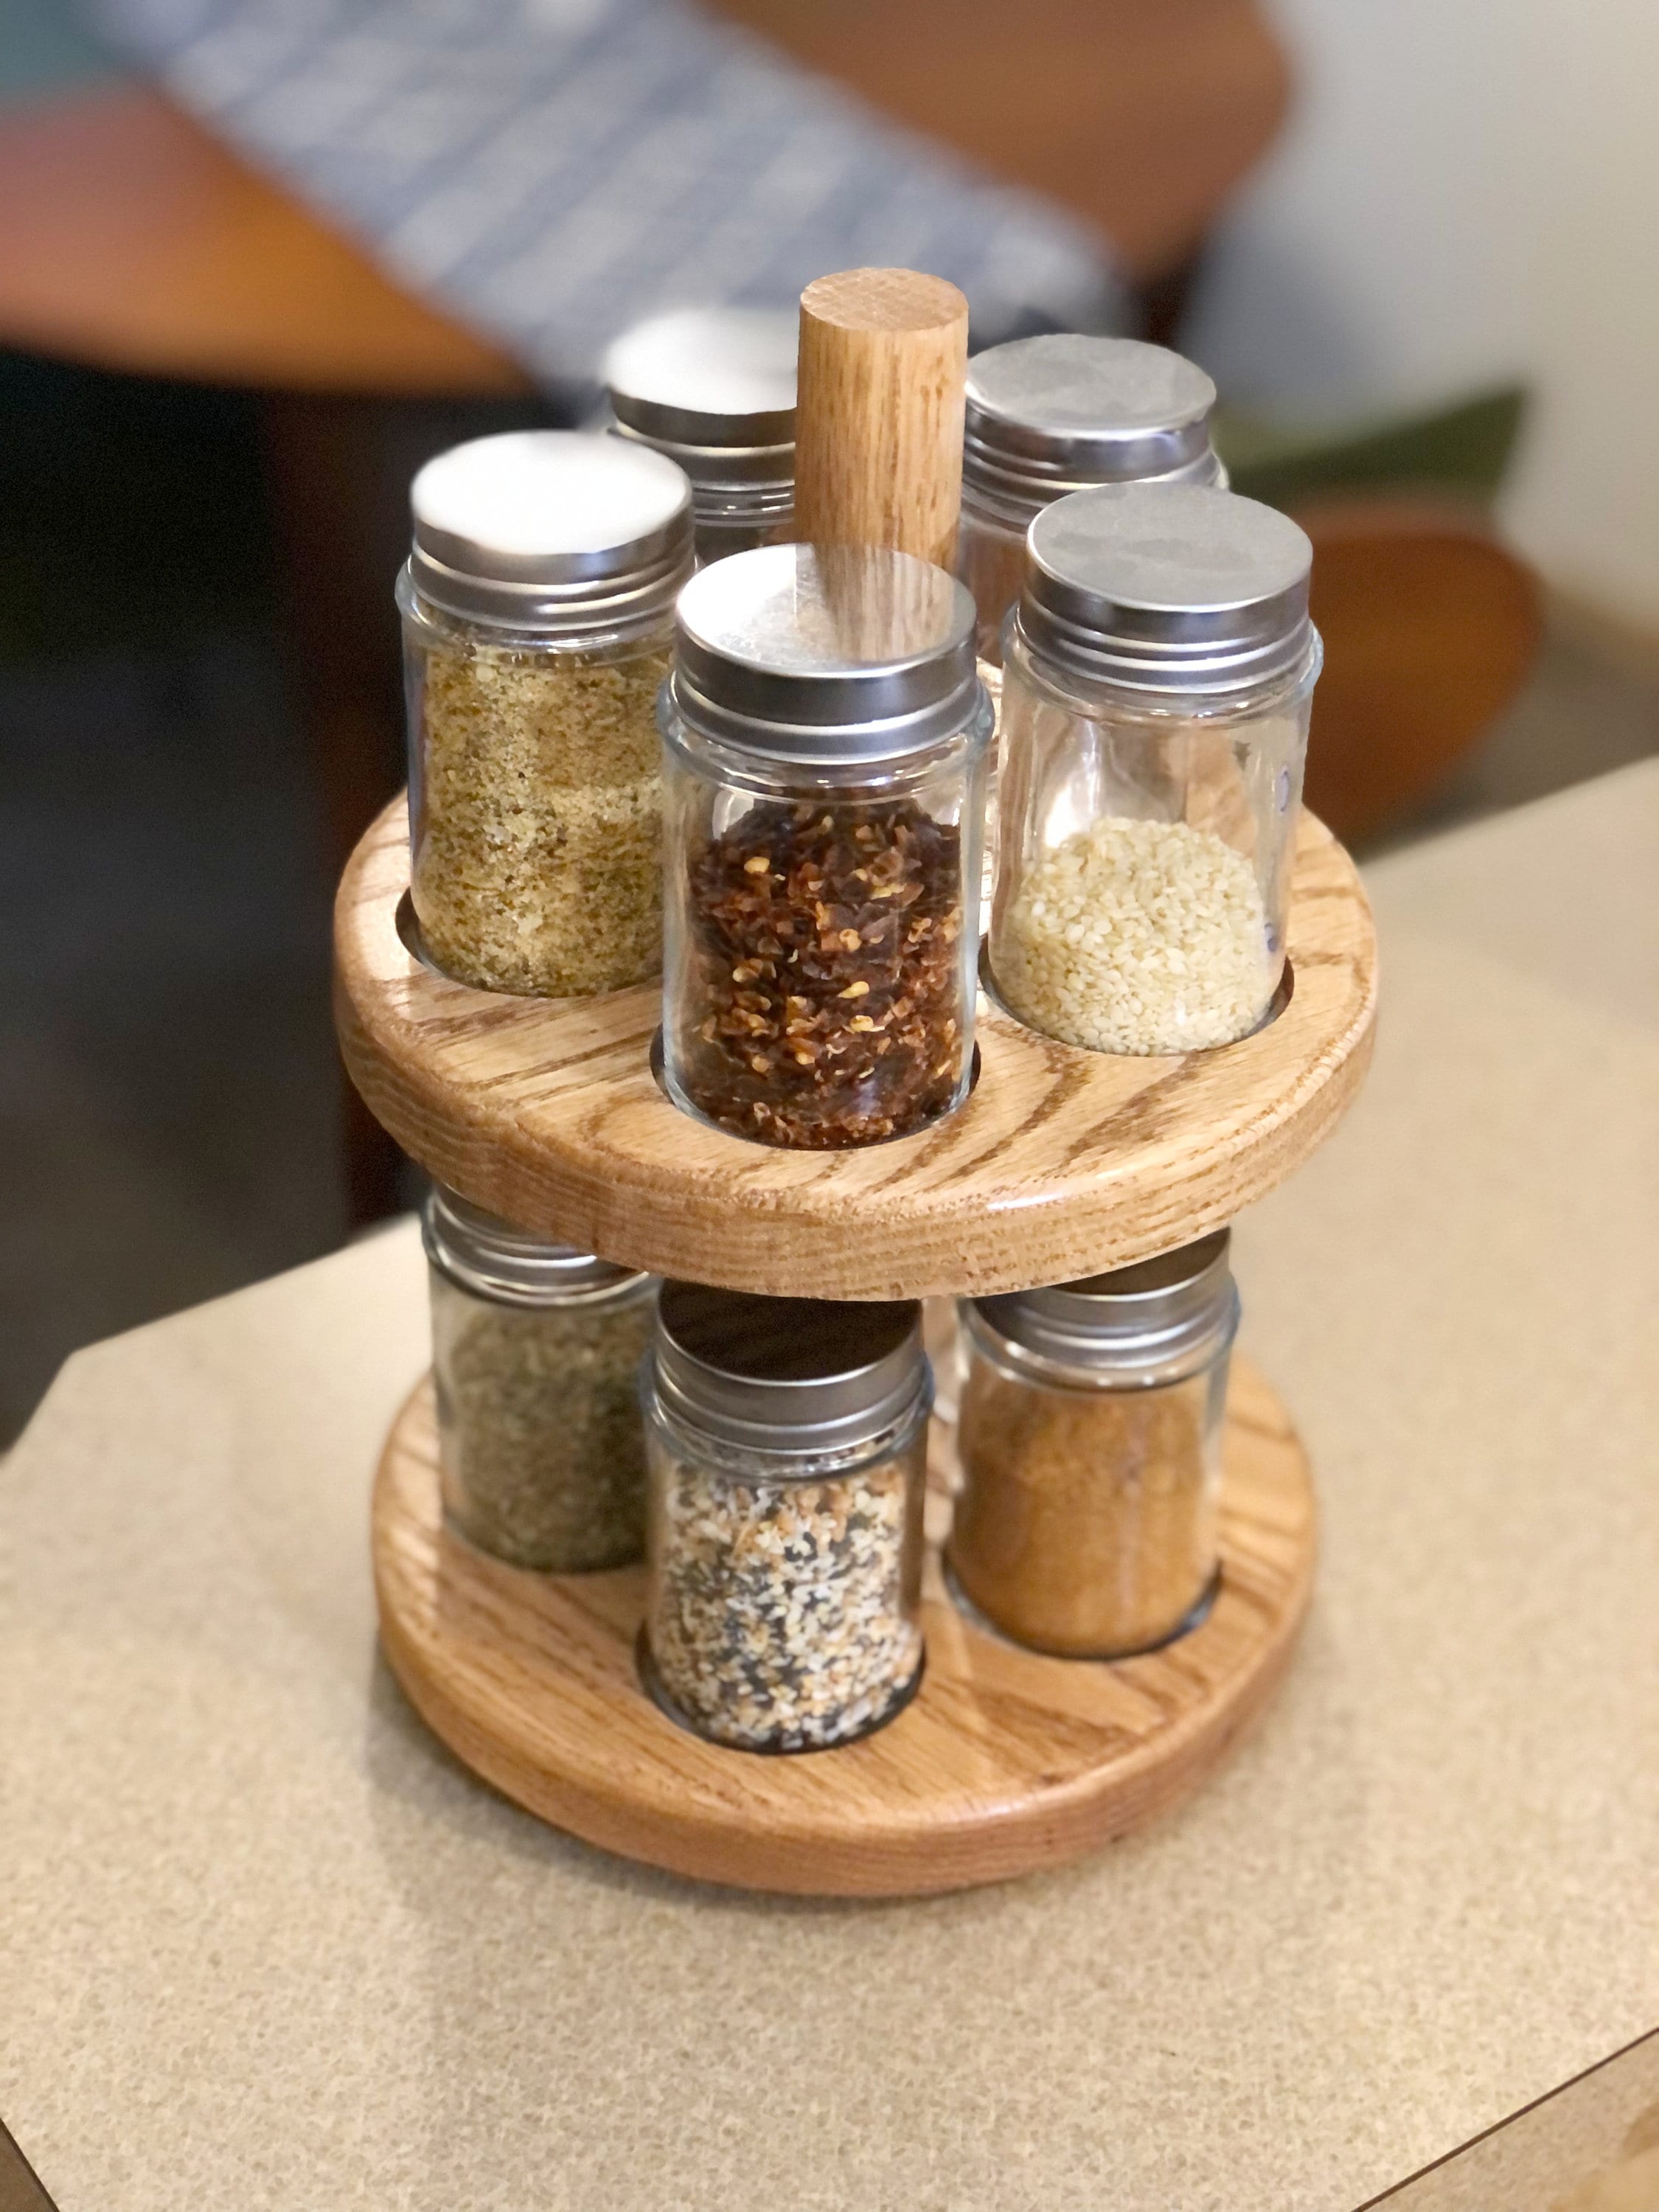 Kamenstein Natural Hardwood Revolving Spice Rack, with 40 Filled Spice Jars